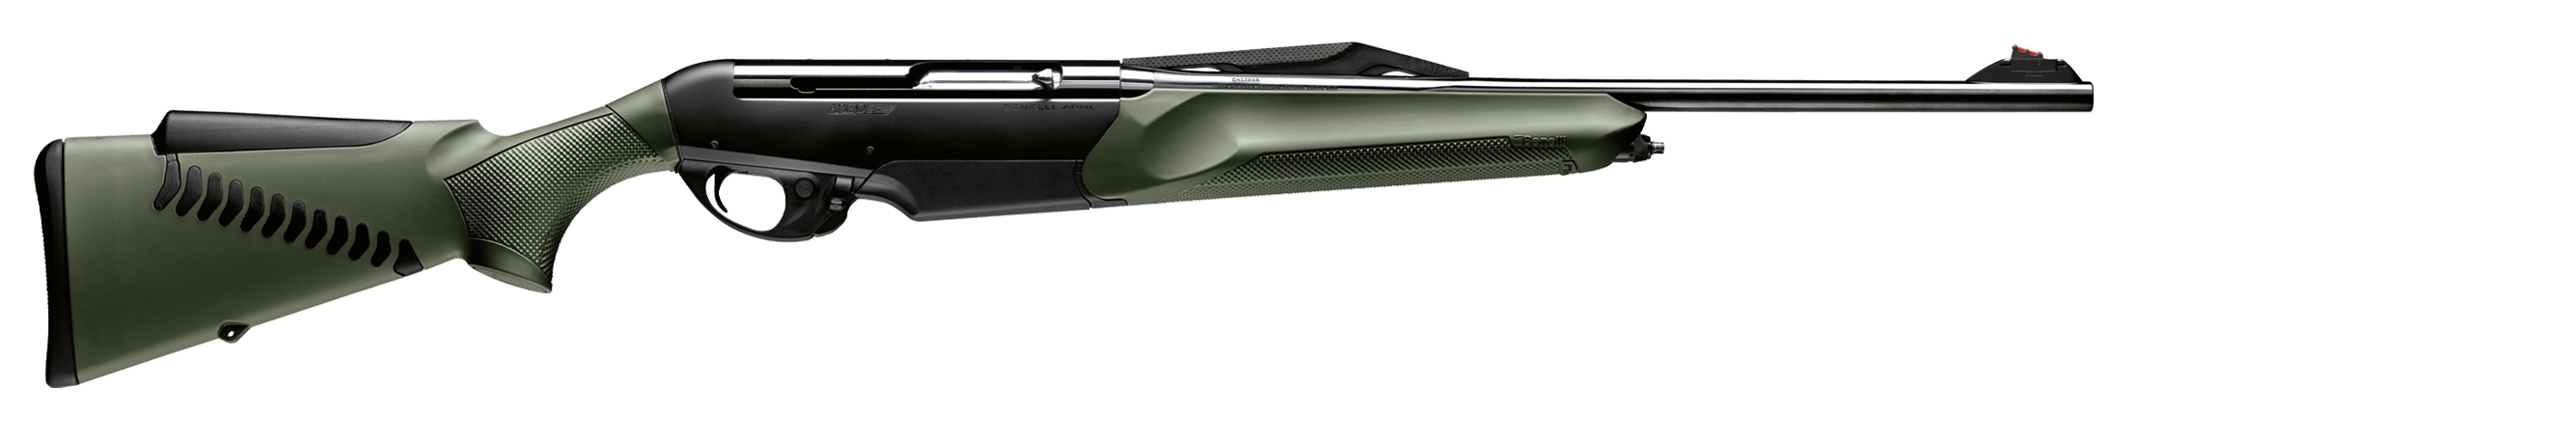 Argo E Comfortech Semi-Automatic Rifle Amazonia Green